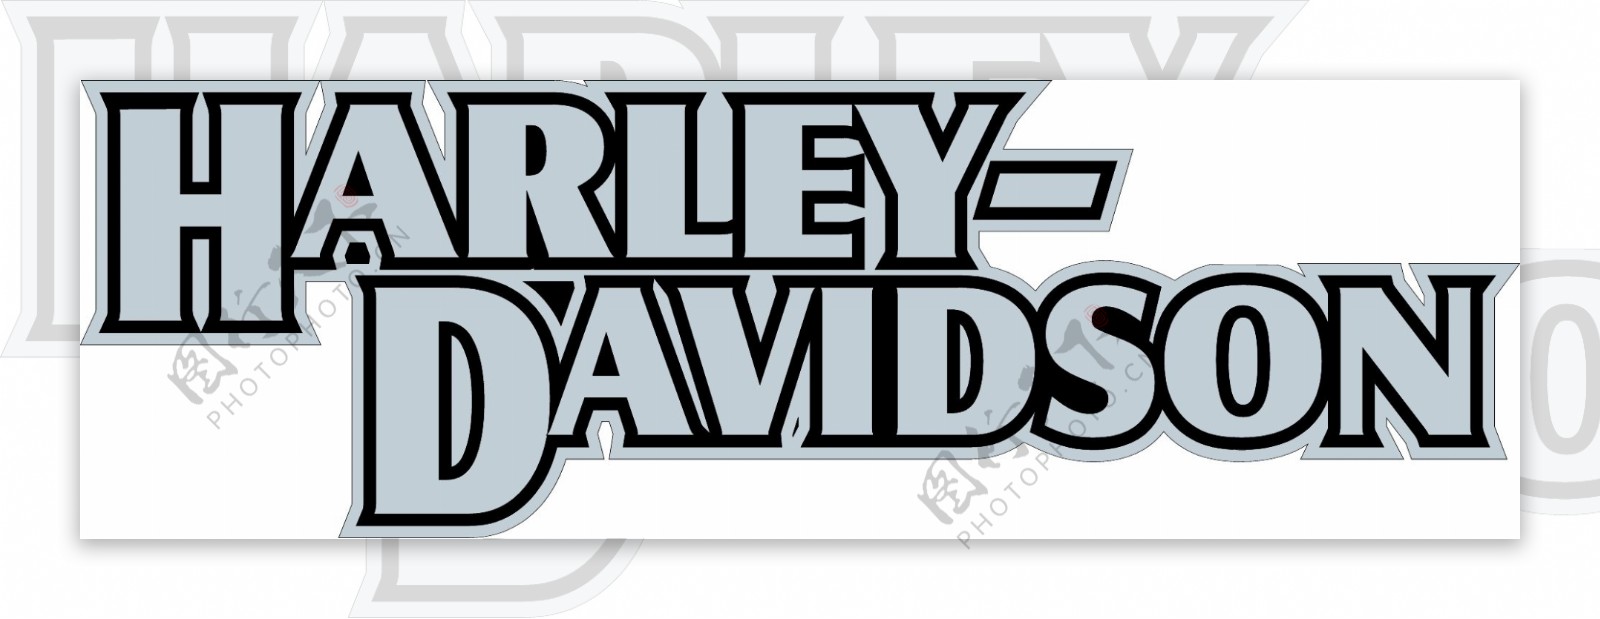 哈雷戴维森logo2